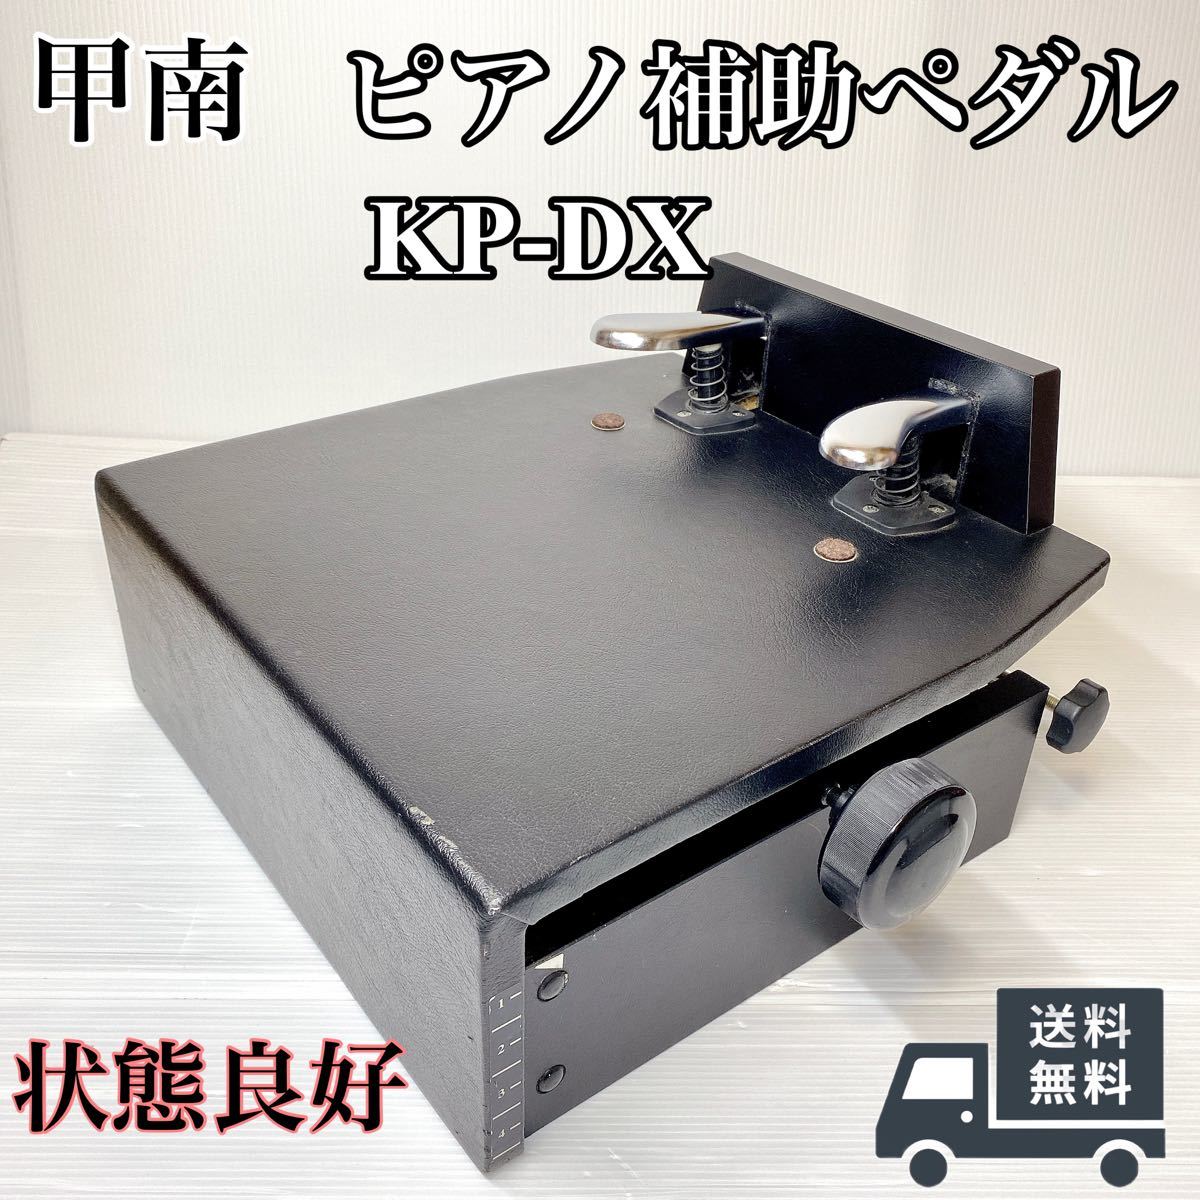 甲南 ピアノ 補助ペダル KP-DX 高さ調整可能 ピアノ補助ペダル  アシストペダル